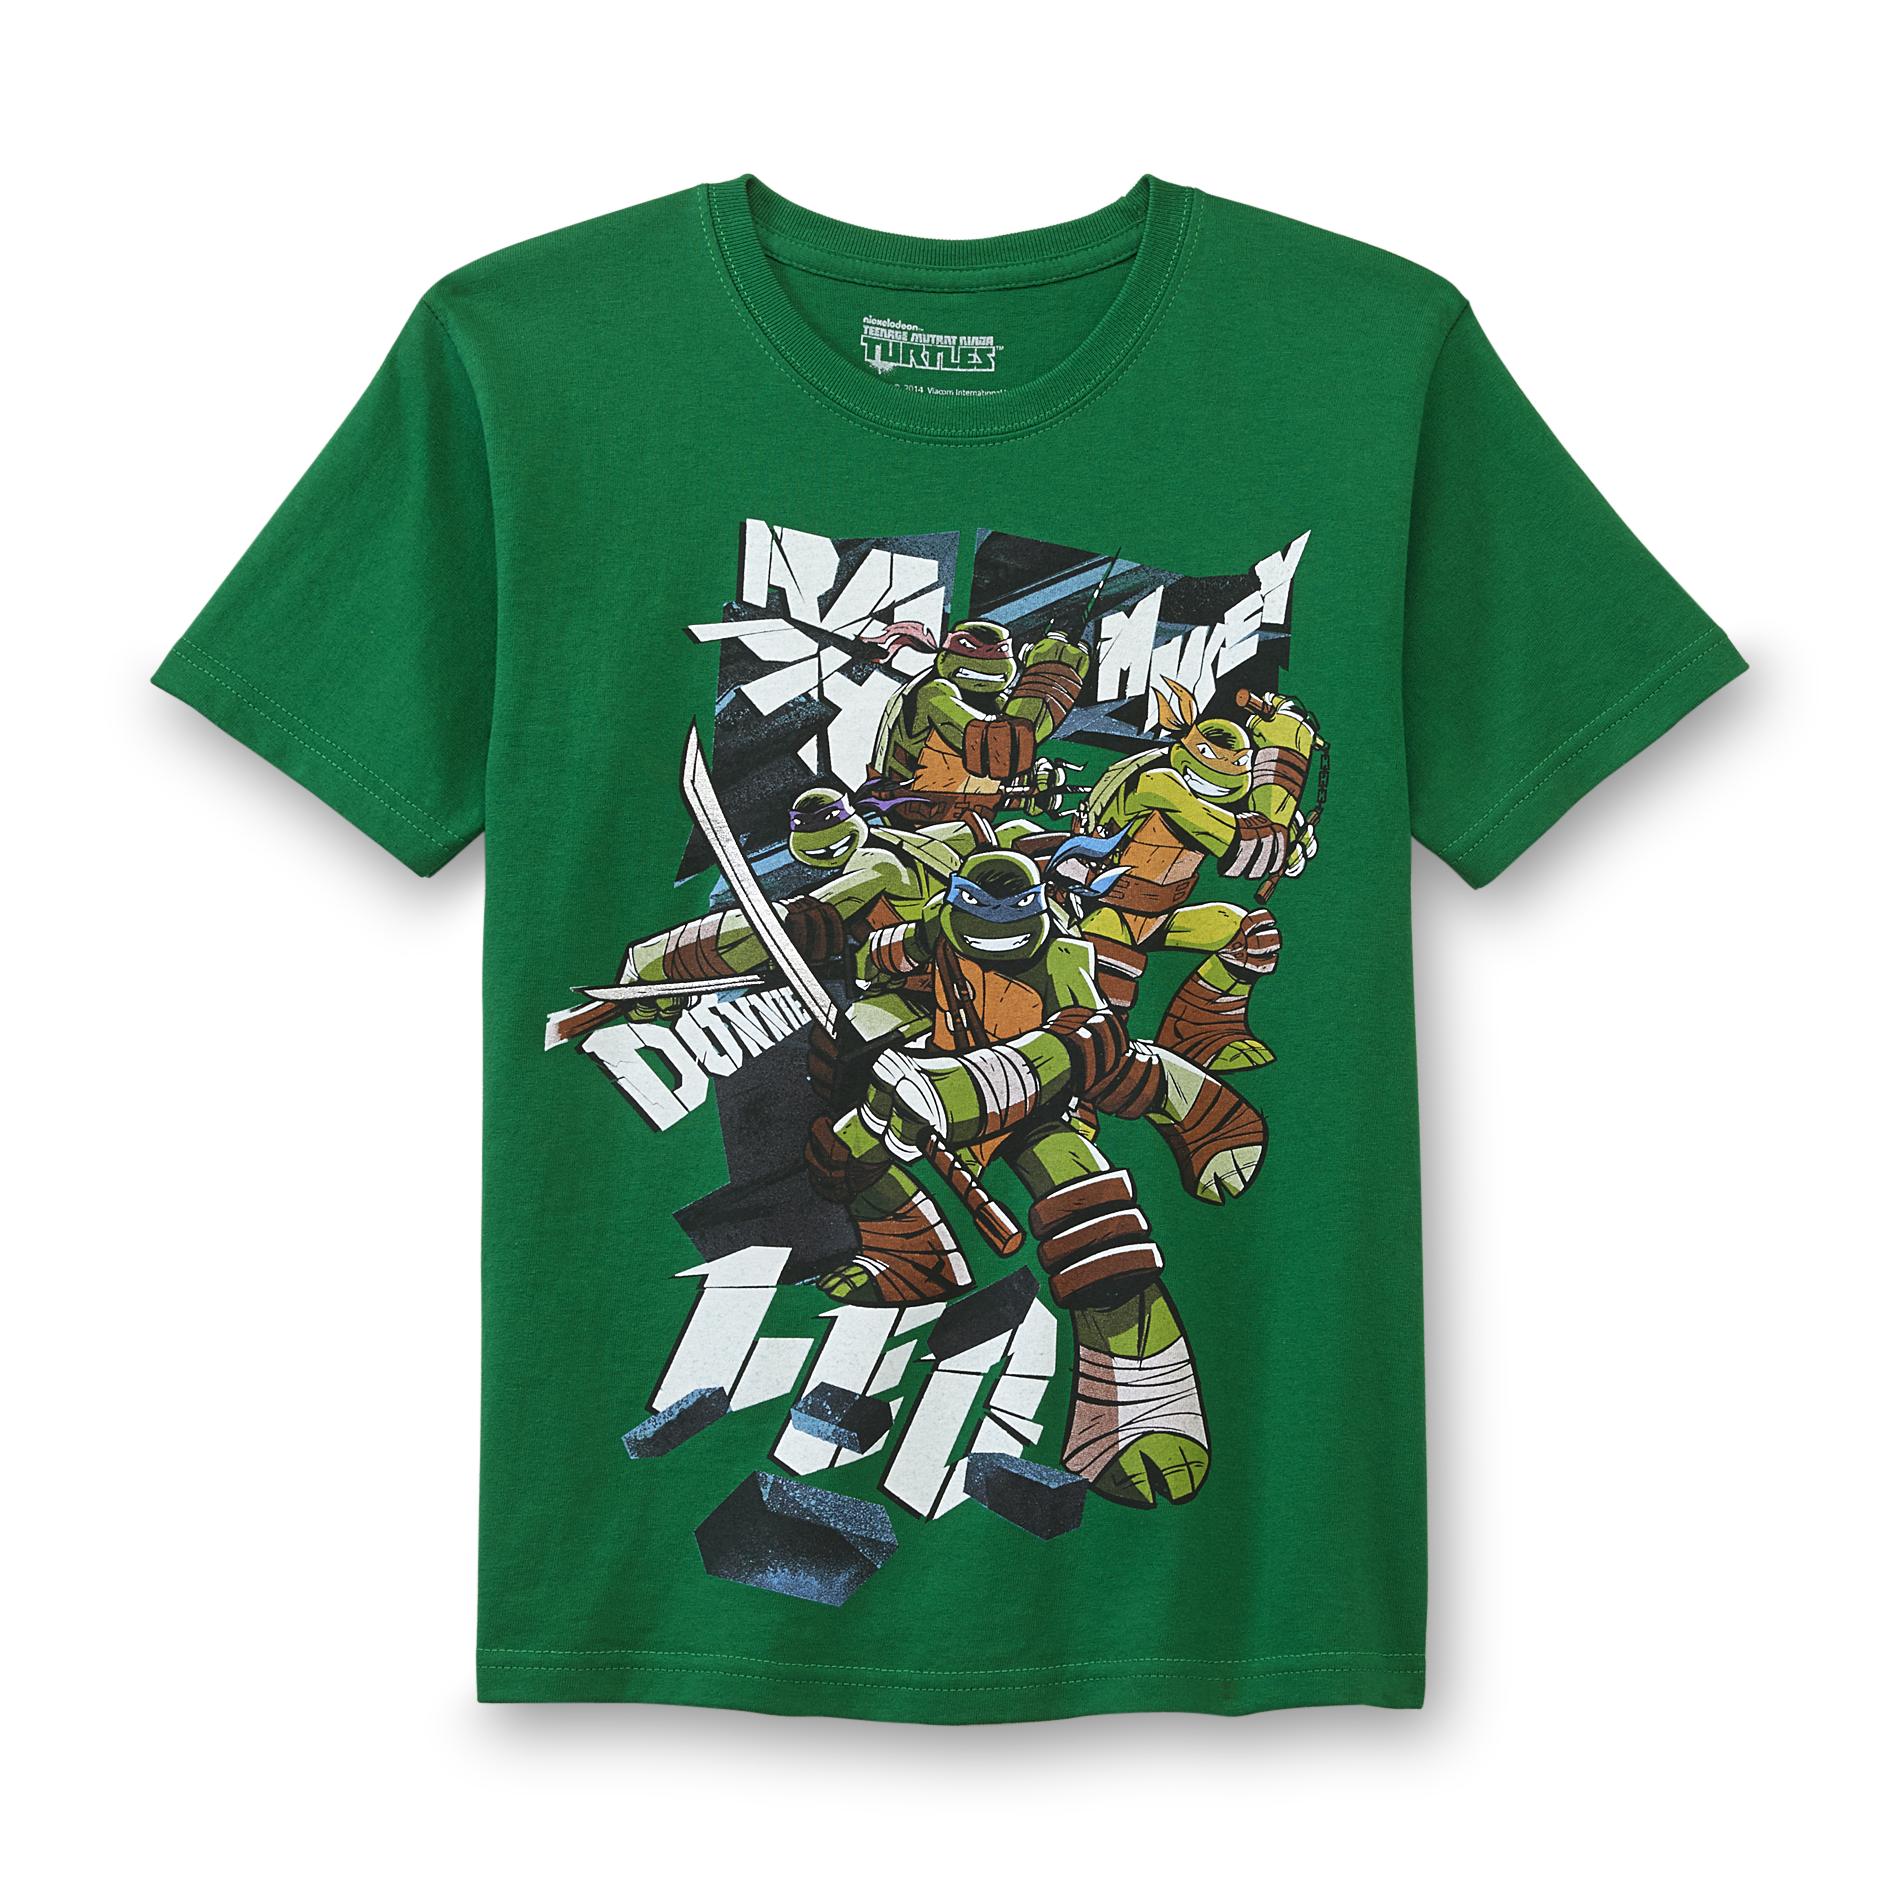 Nickelodeon Teenage Mutant Ninja Turtles Boy's Graphic T-Shirt